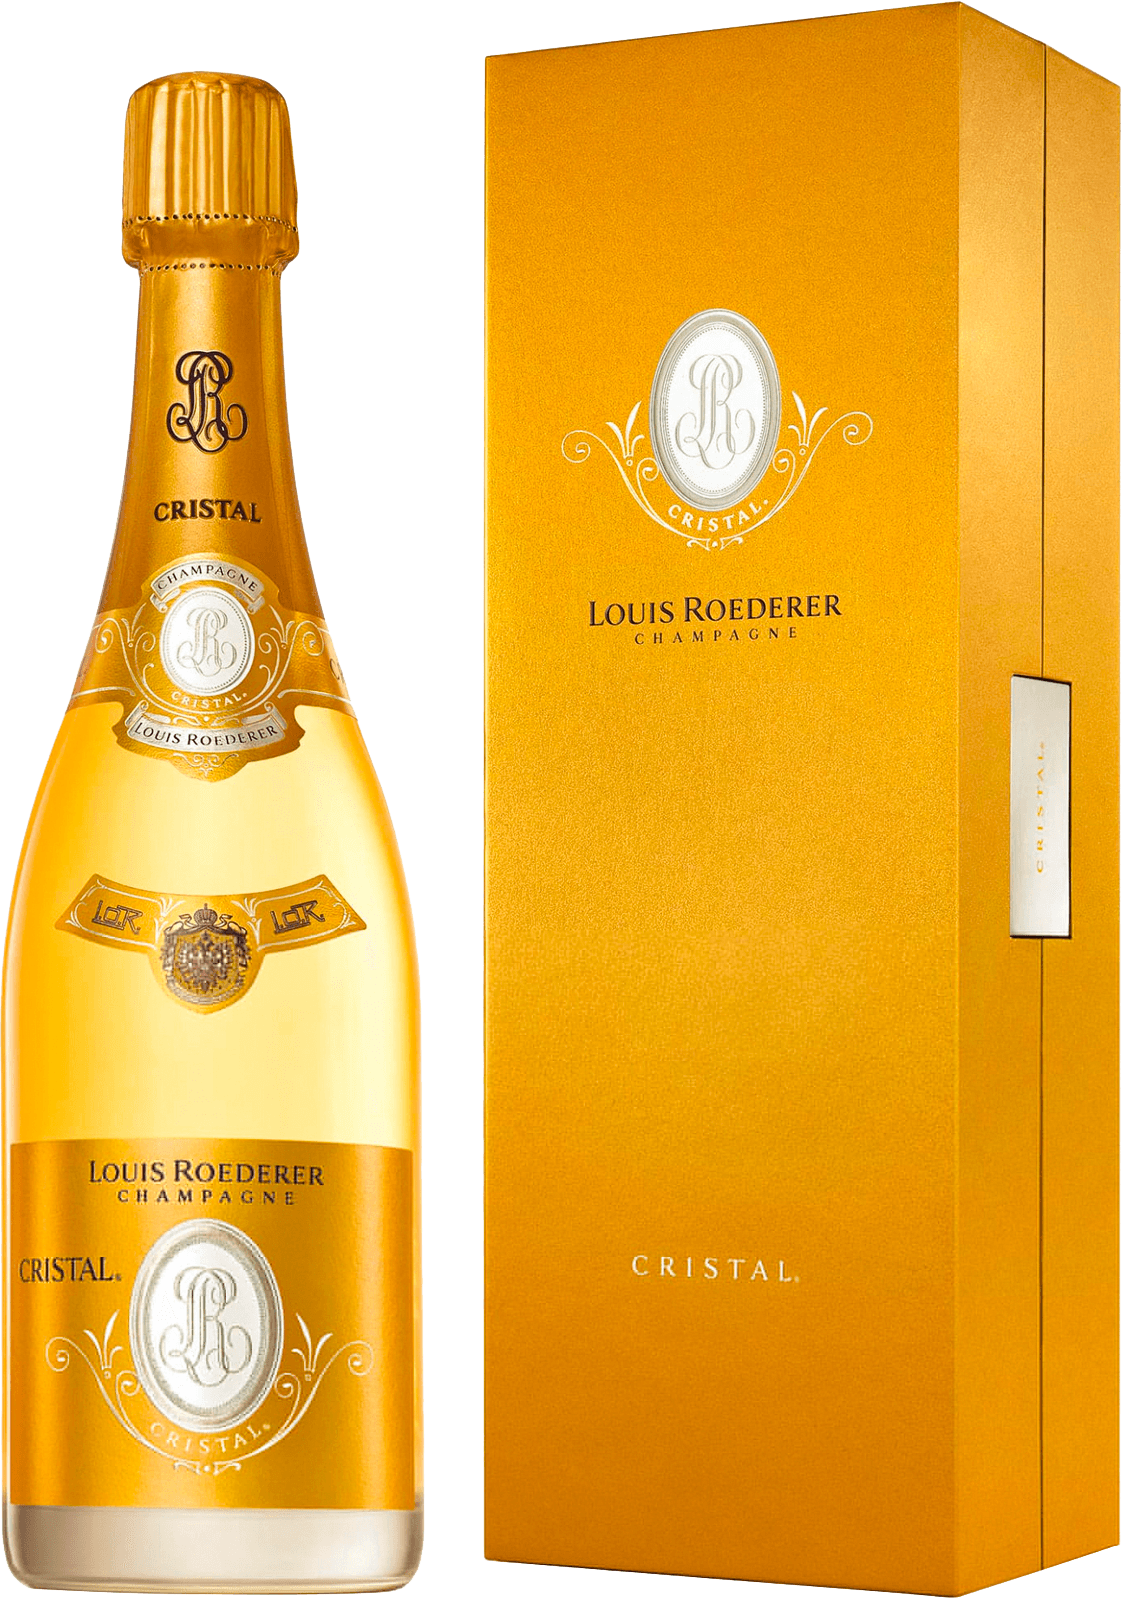 Cristal roederer en coffret 2009  Roederer, Champagne